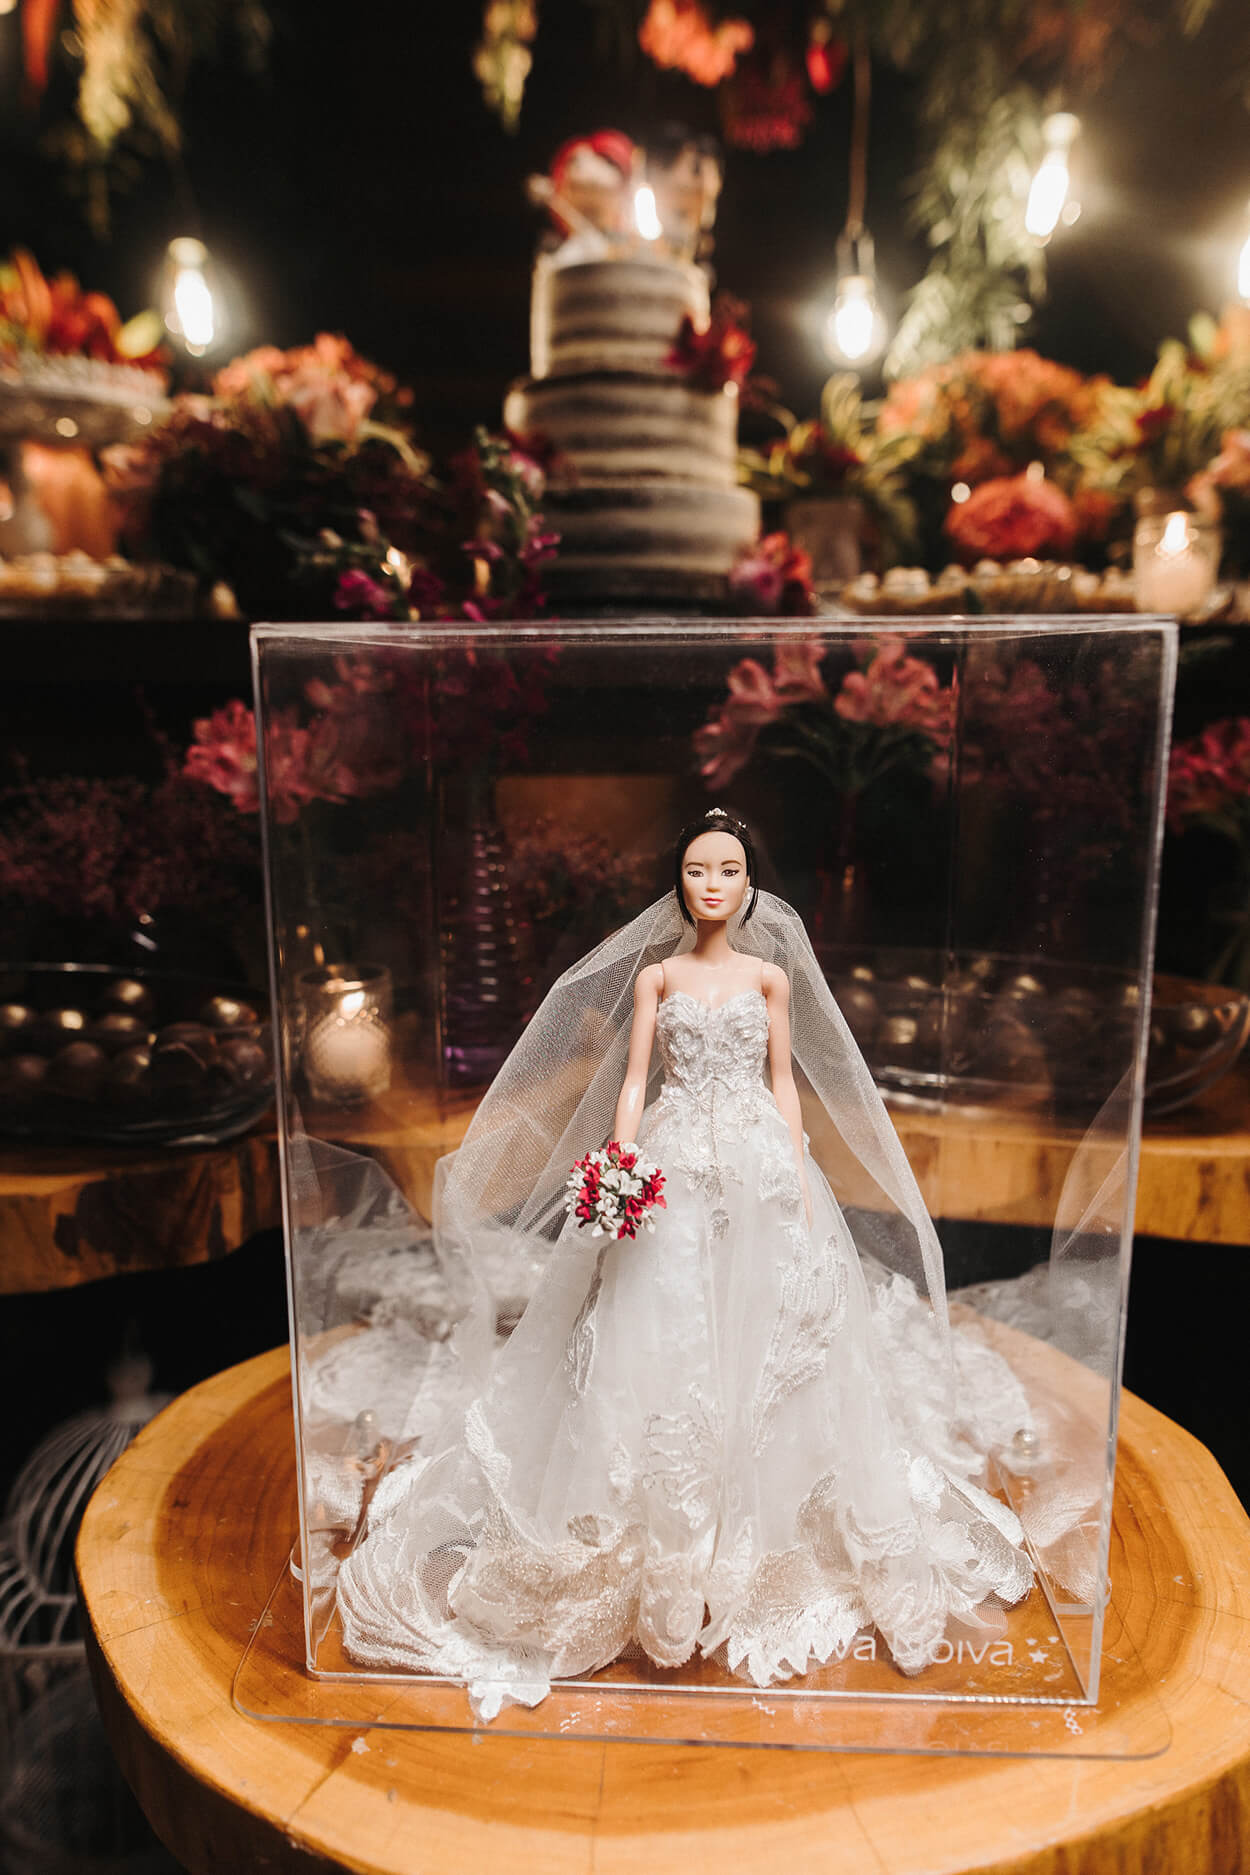 Caixa transparente com boneca vestida de noiva